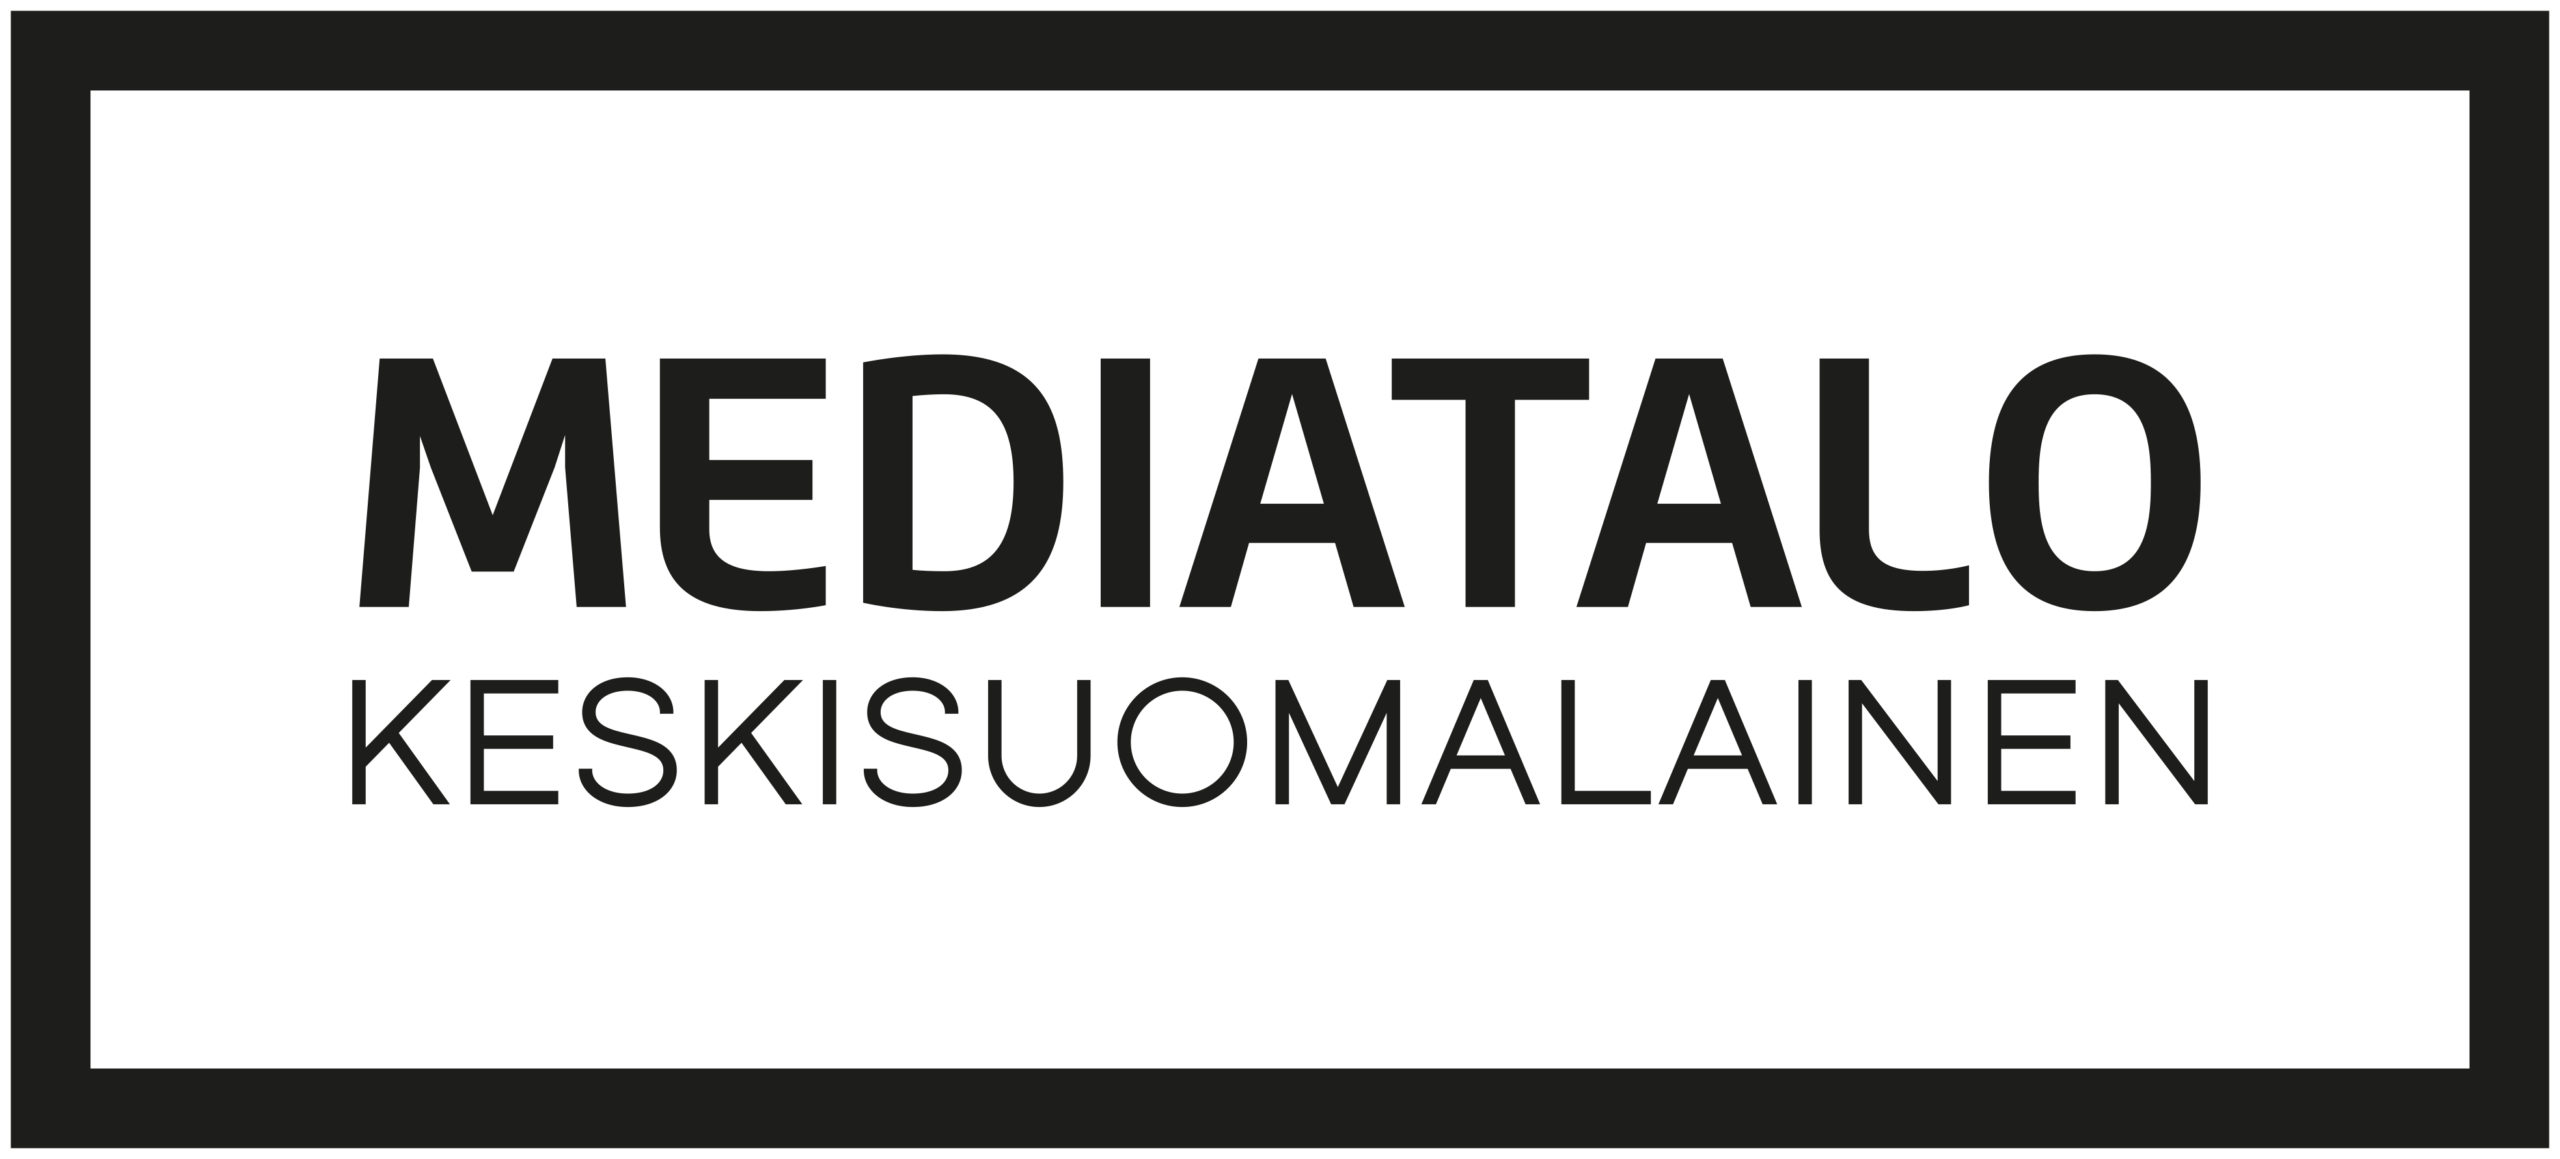 Mediatalo-eimerkkia╠ê-musta - Etelä-Suomen Media Oy